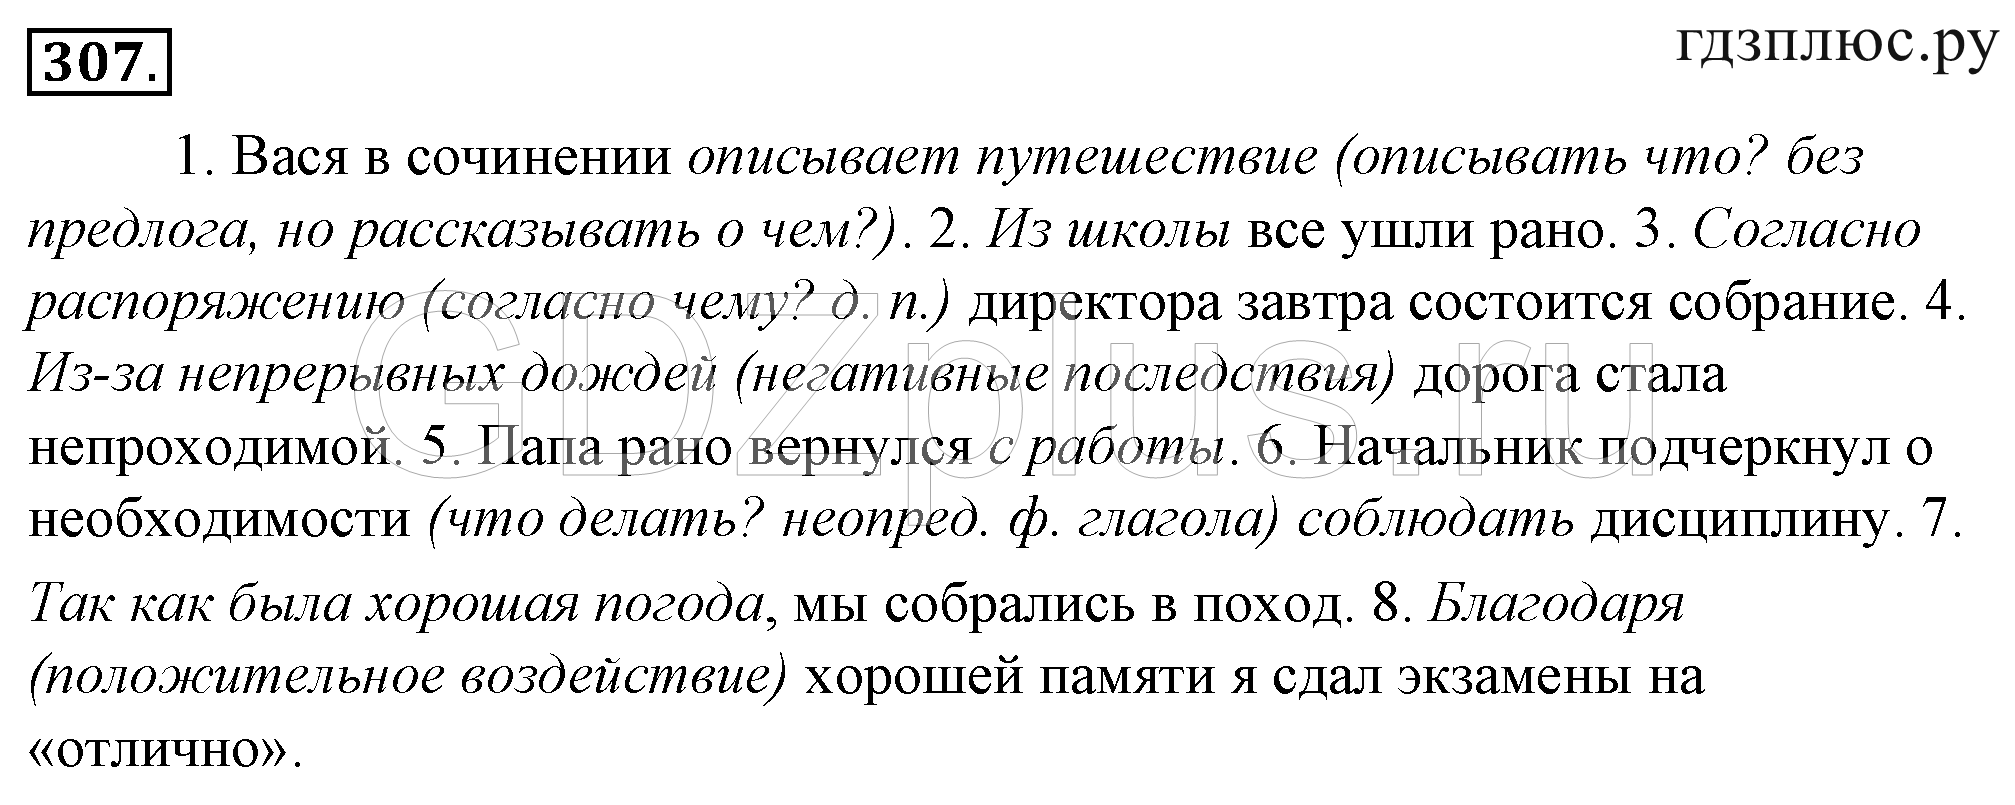 Читать гольцова русский 10 11